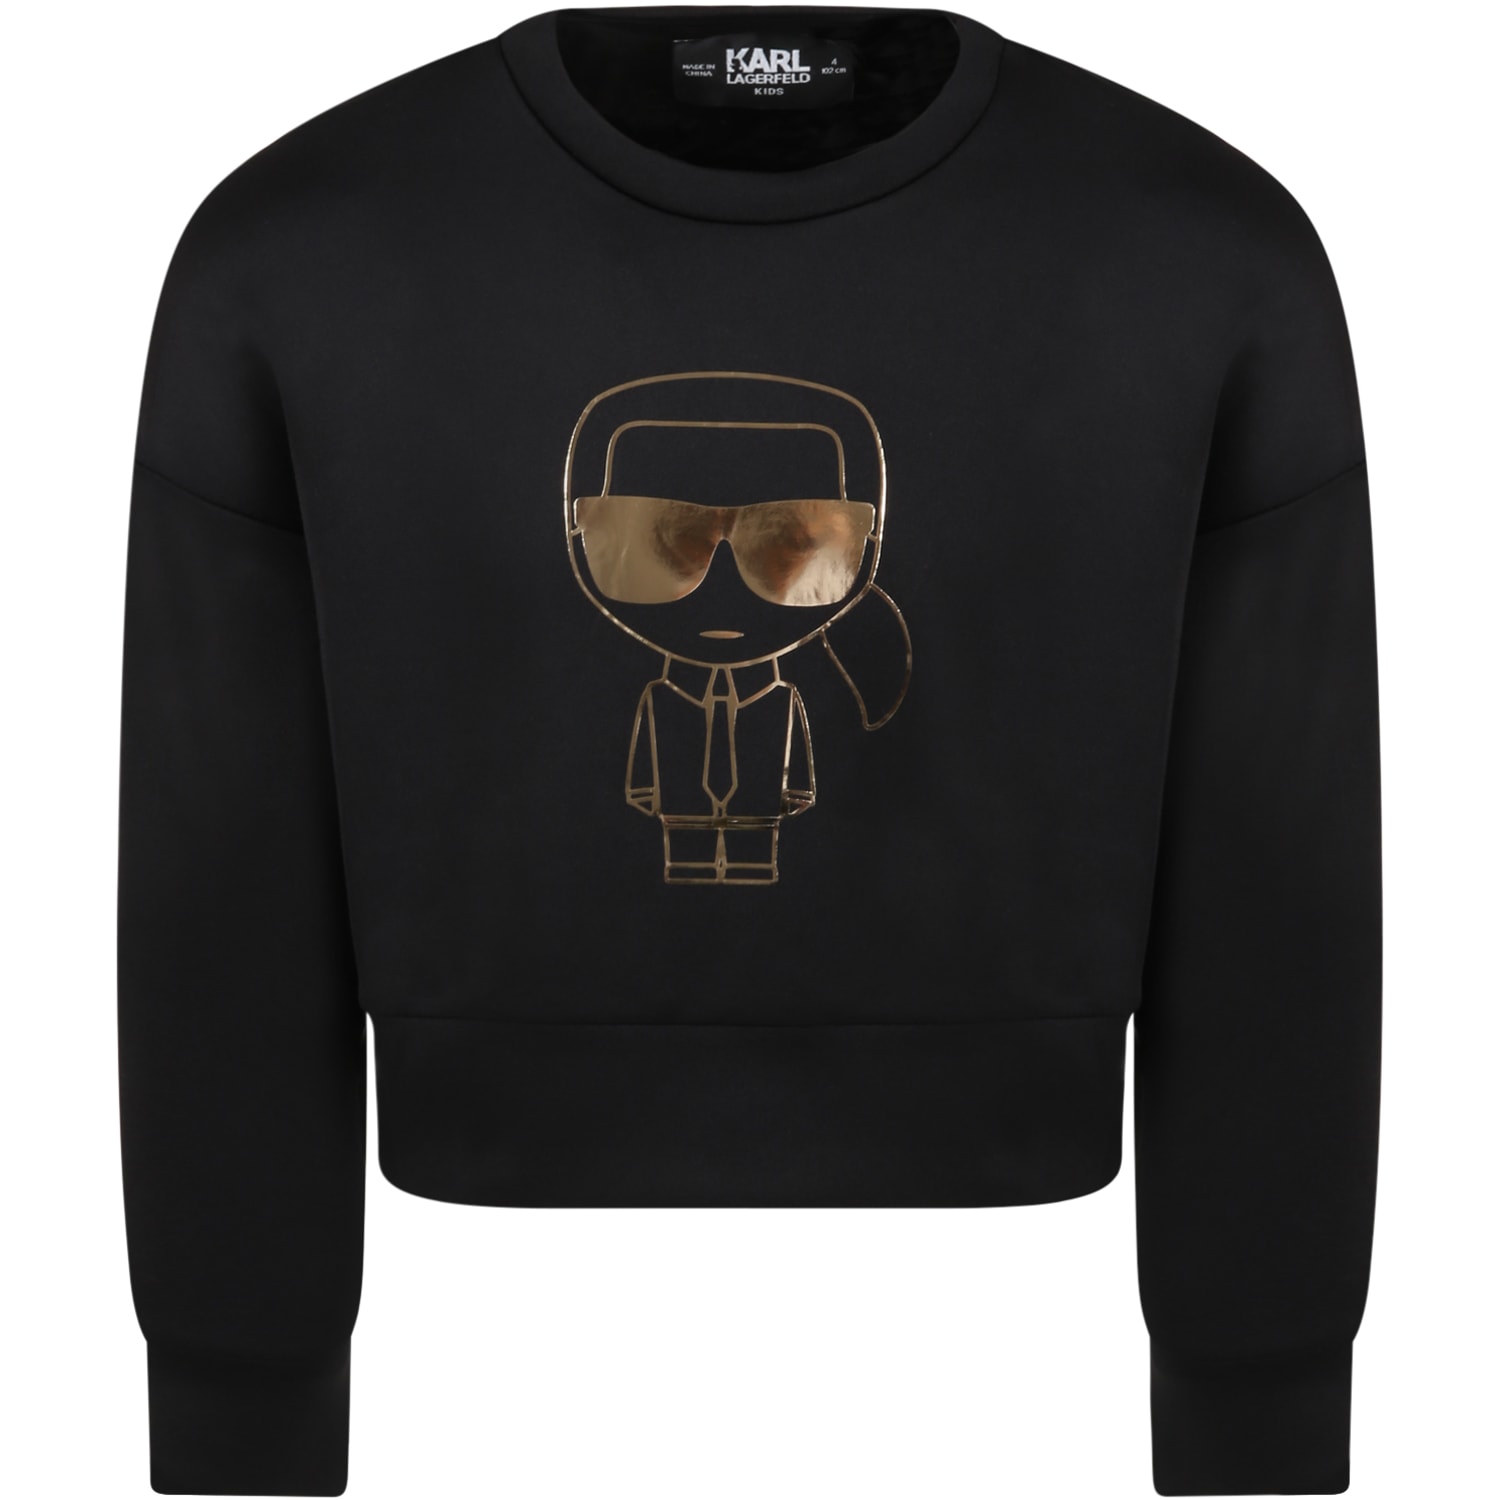 Karl Lagerfeld Kids Black Sweatshirt For Girl With Karl Lagerfeld